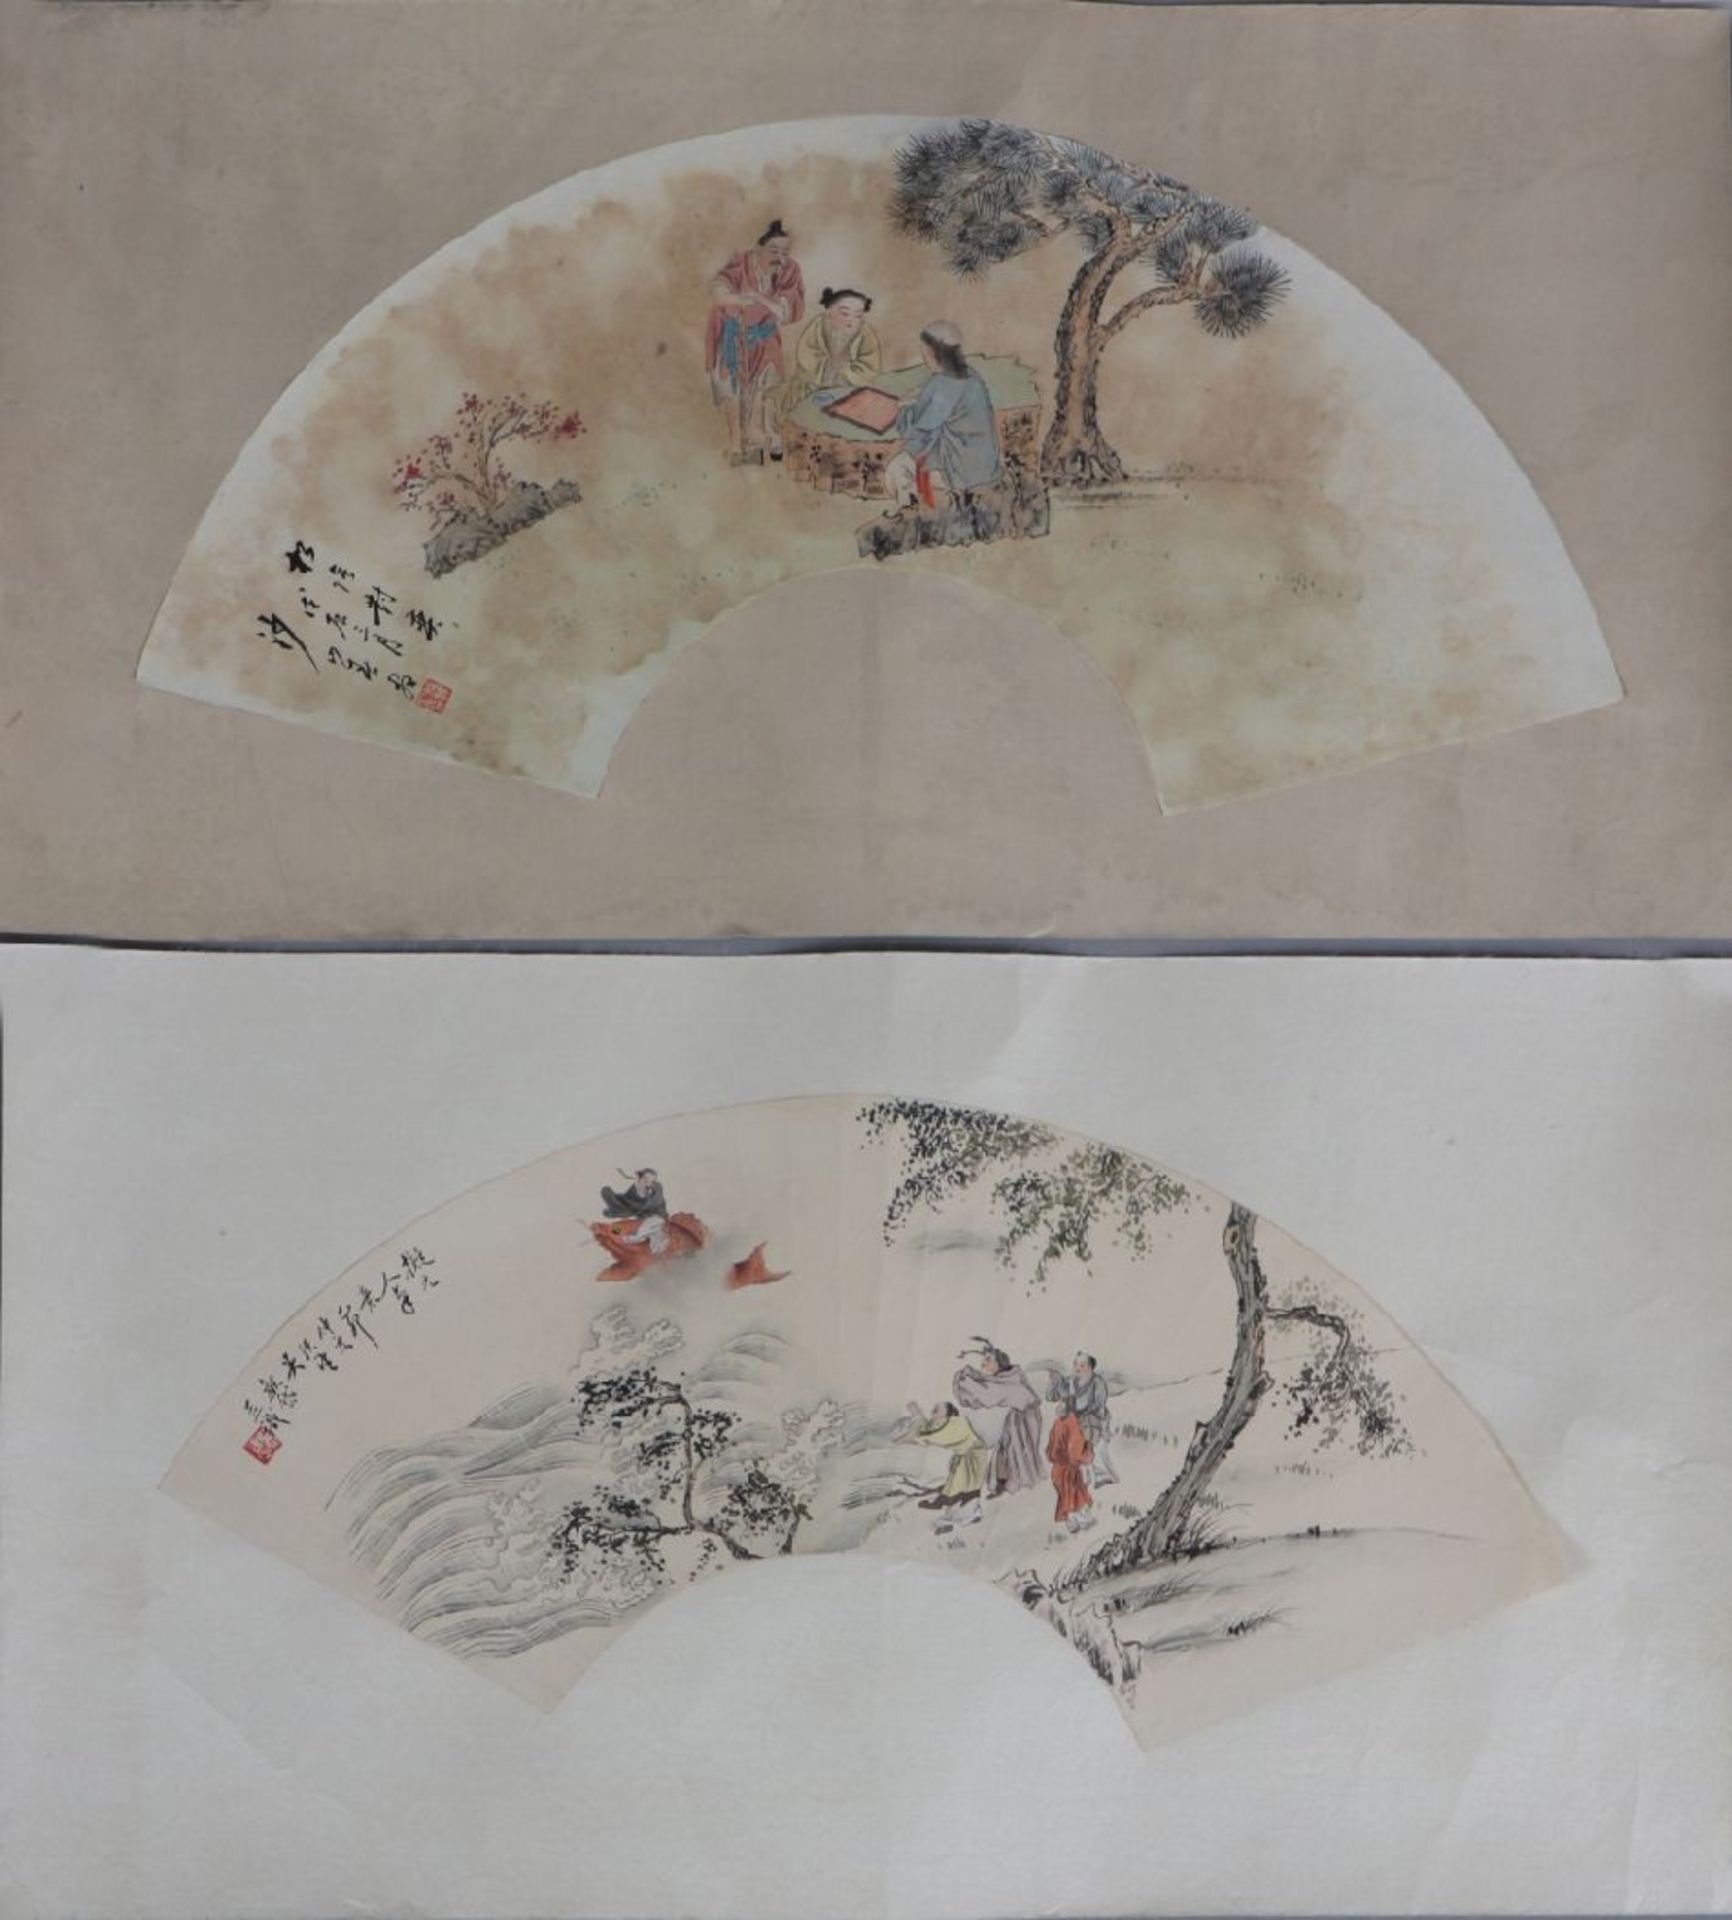 2 chinesische FächerentwürfeTusche auf Papier, 1x mythologische Szene ¨Asiate auf Fisch reitend¨,